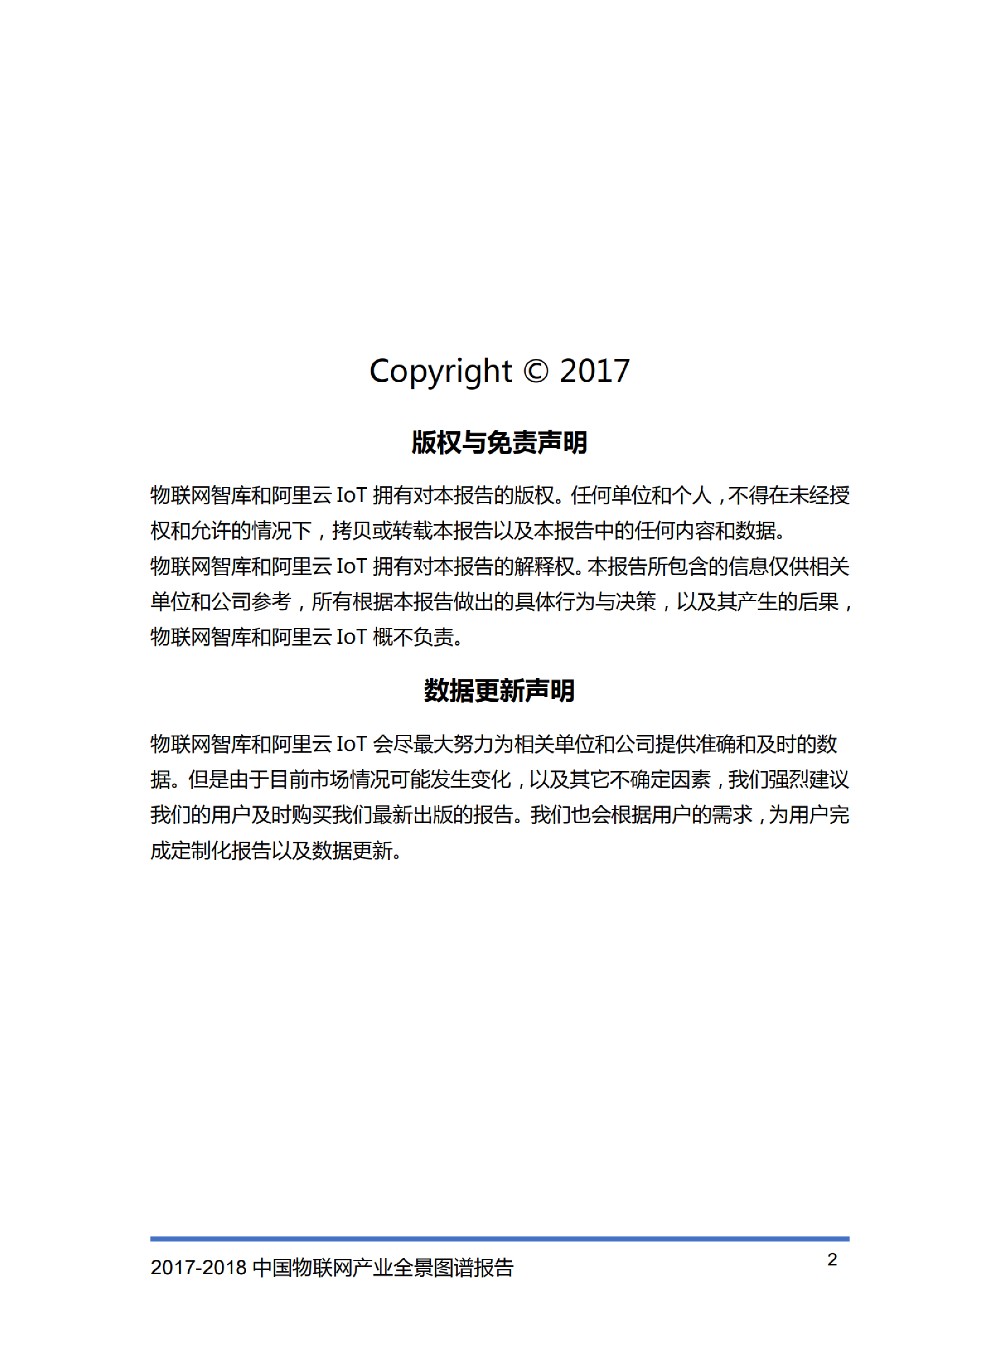 2017-2018物联网产业全景图完整版_01